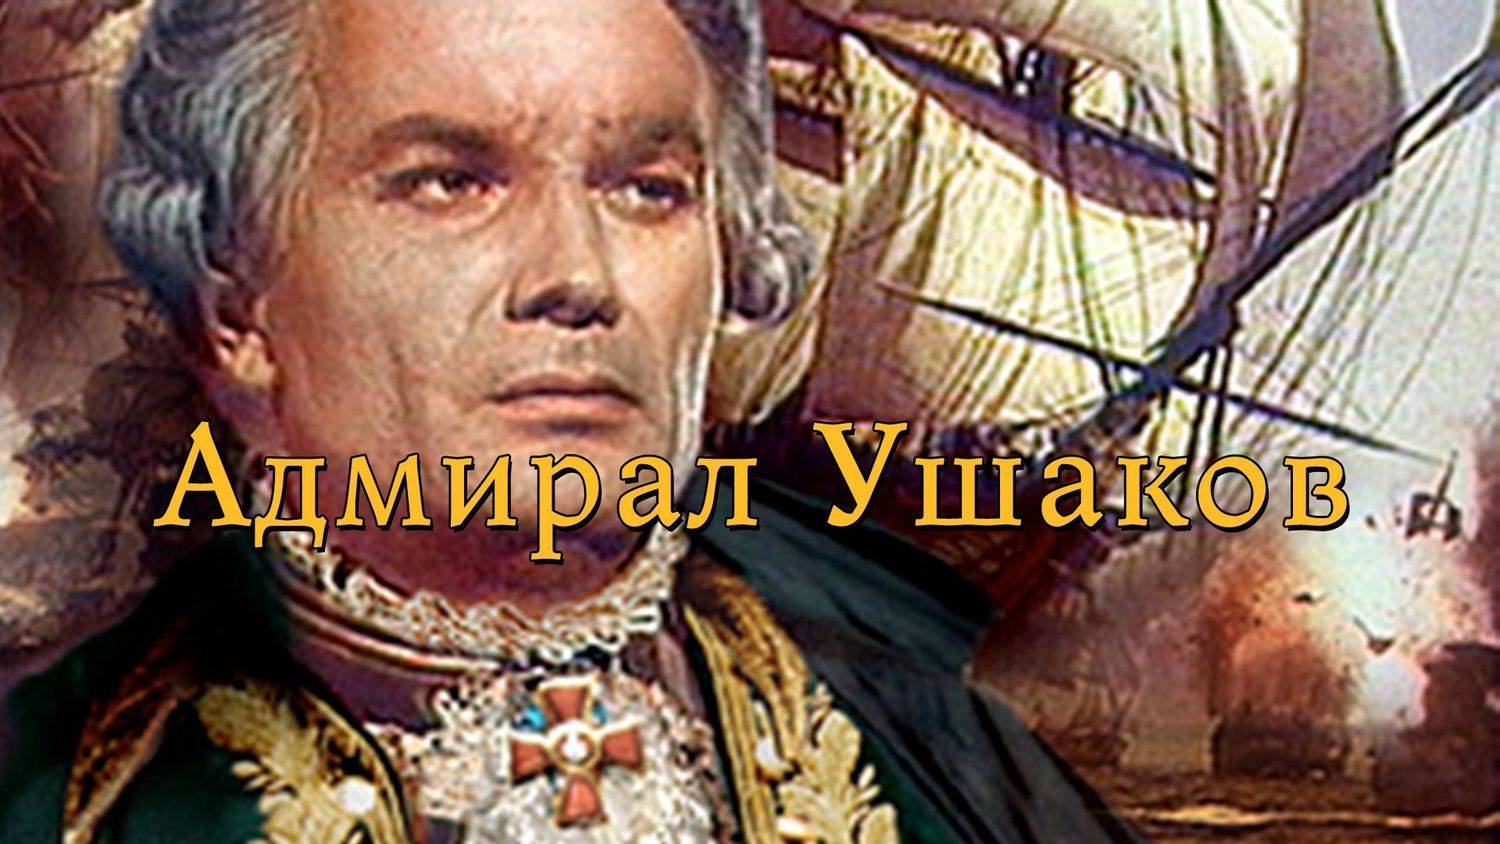 Адмирал Ушаков (биографический, реж. Михаил Ромм, 1953 г.)